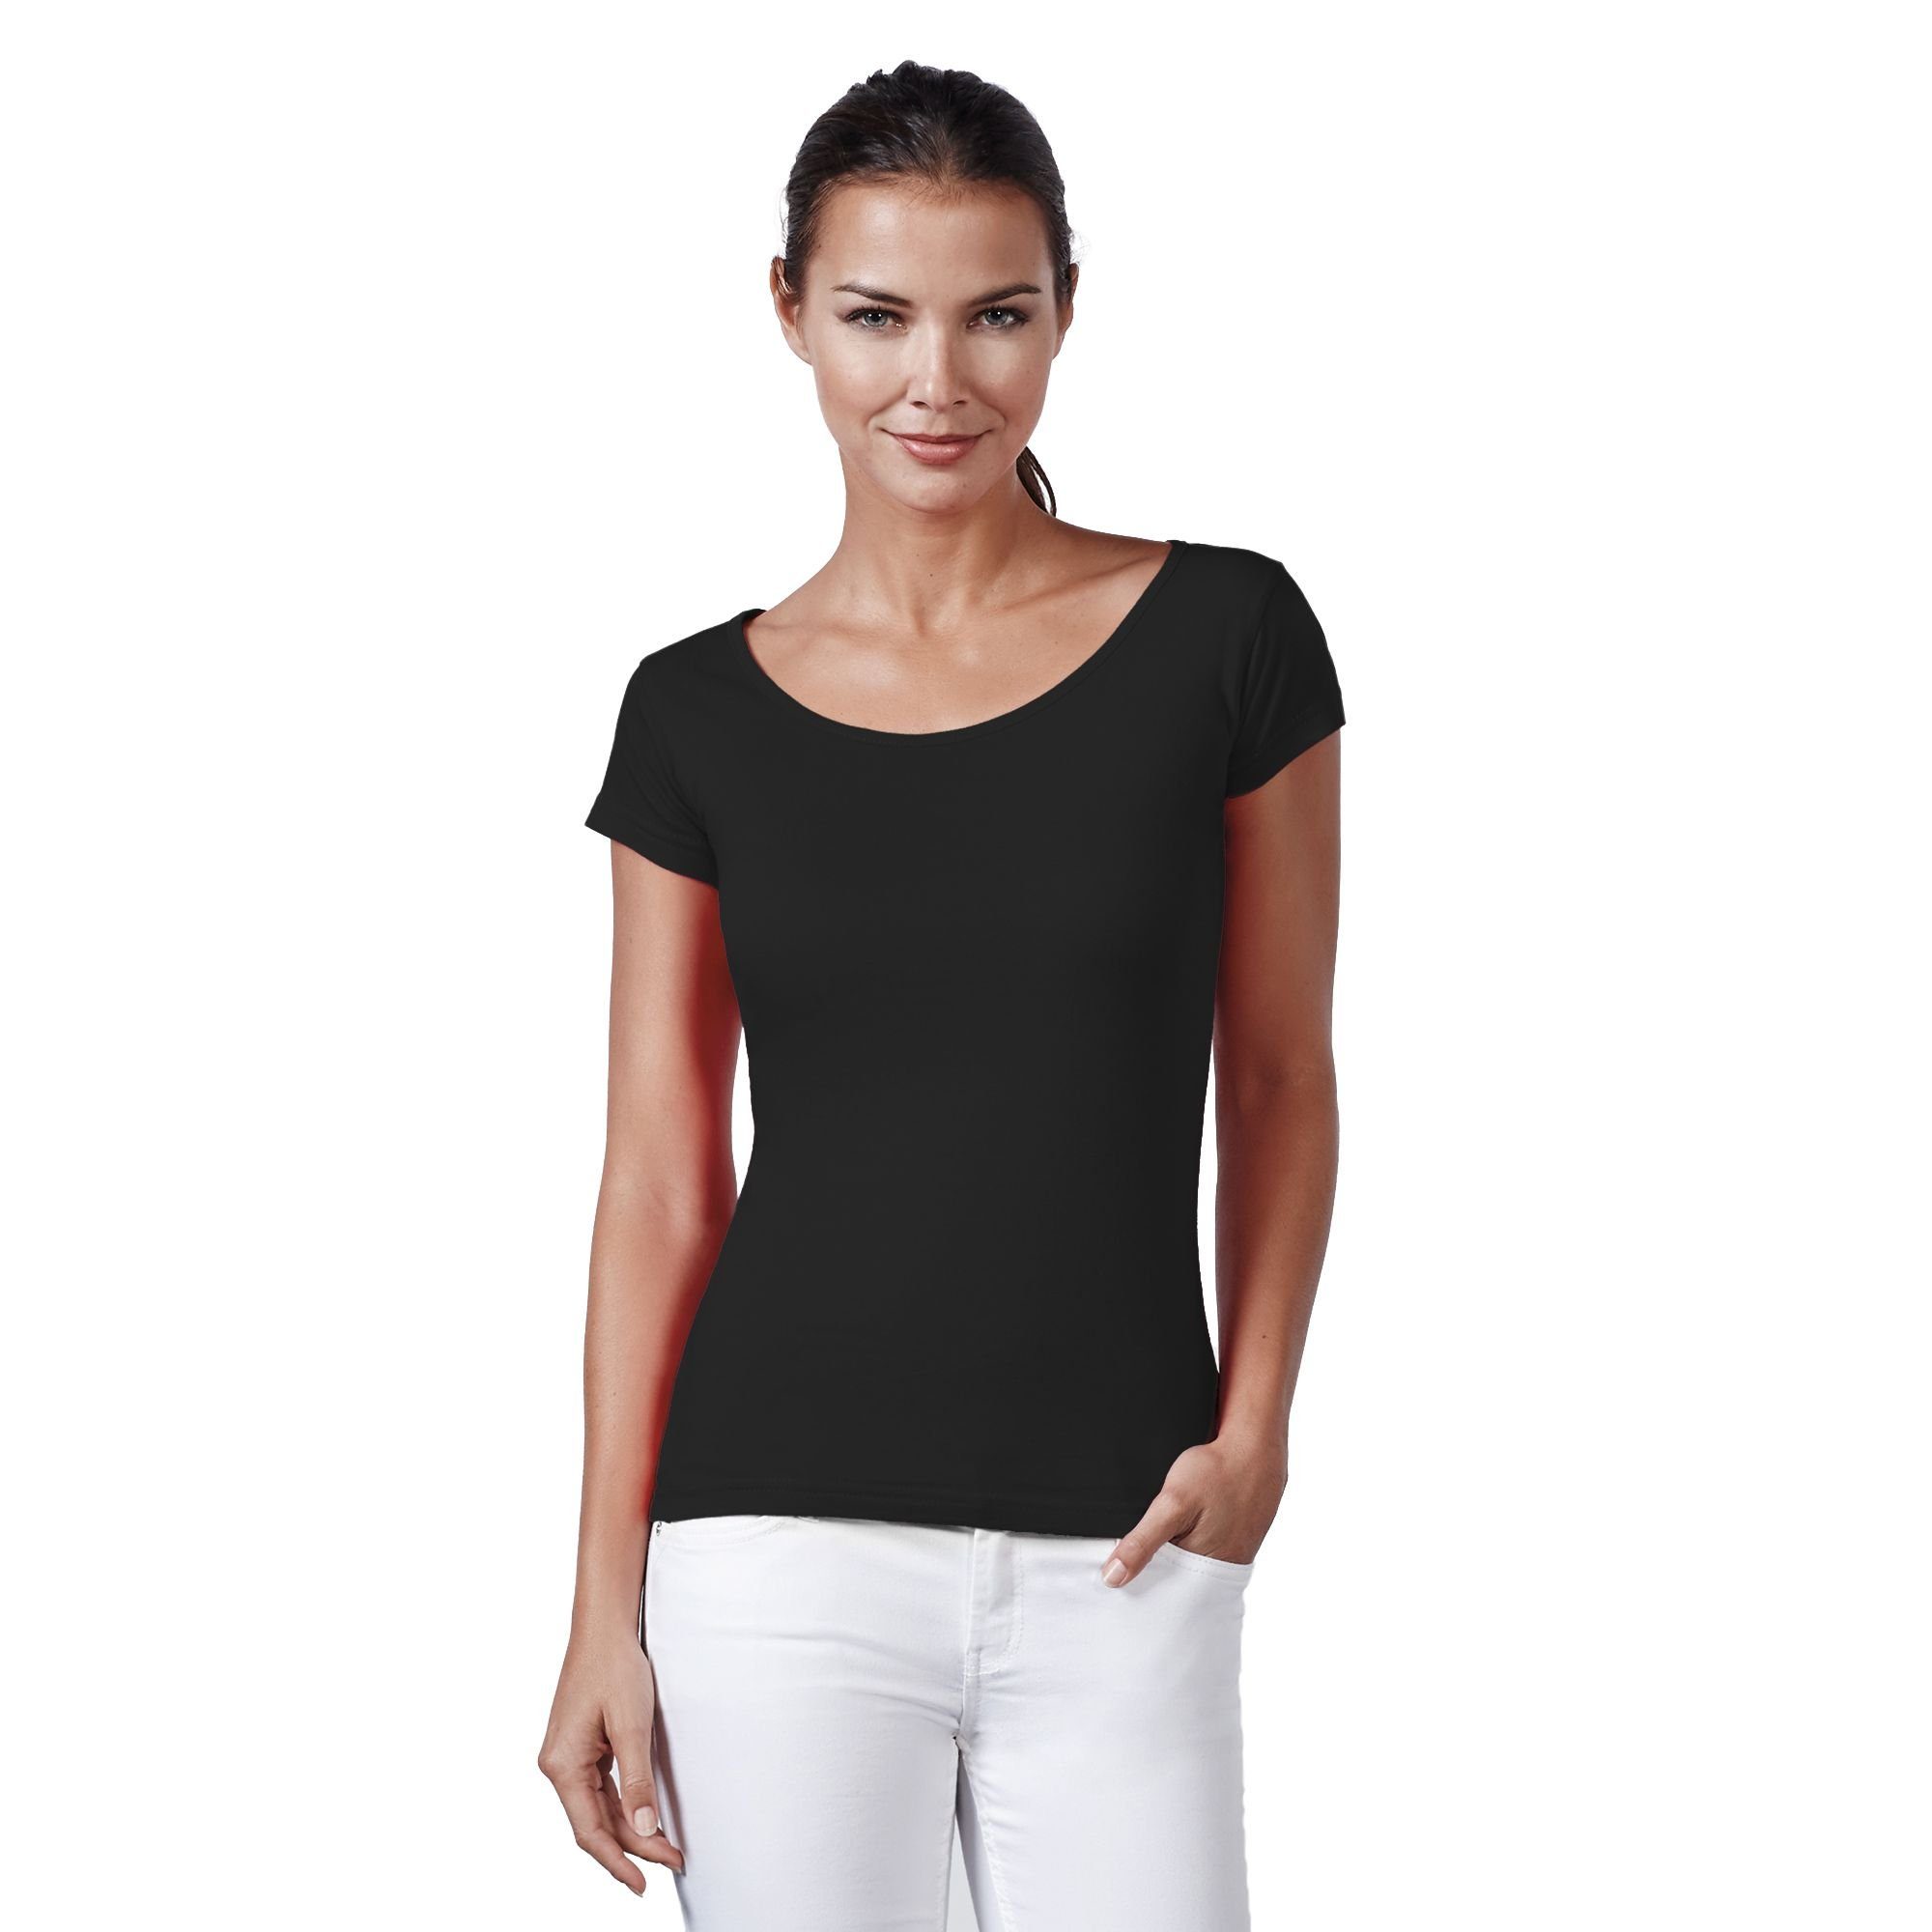 Neverless Print-Shirt Neverless® Basic T-Shirt Damen Slim Fit Baumwolle einfarbig Weiter Rundhals Ausschnitt mit Print schwarz